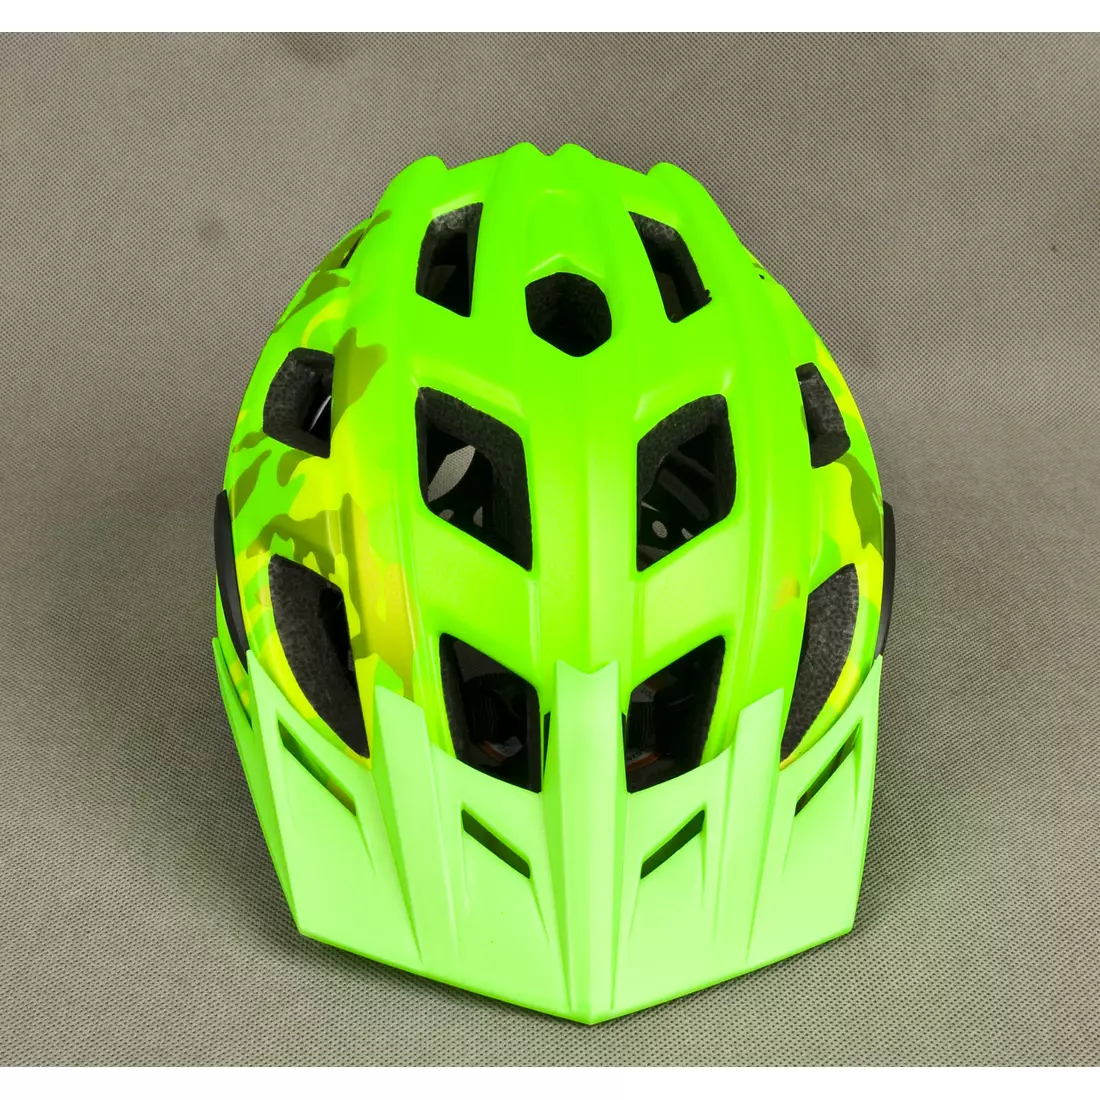 LAZER - Casca de bicicleta MTB ULTRAX, culoare: verde camo flash